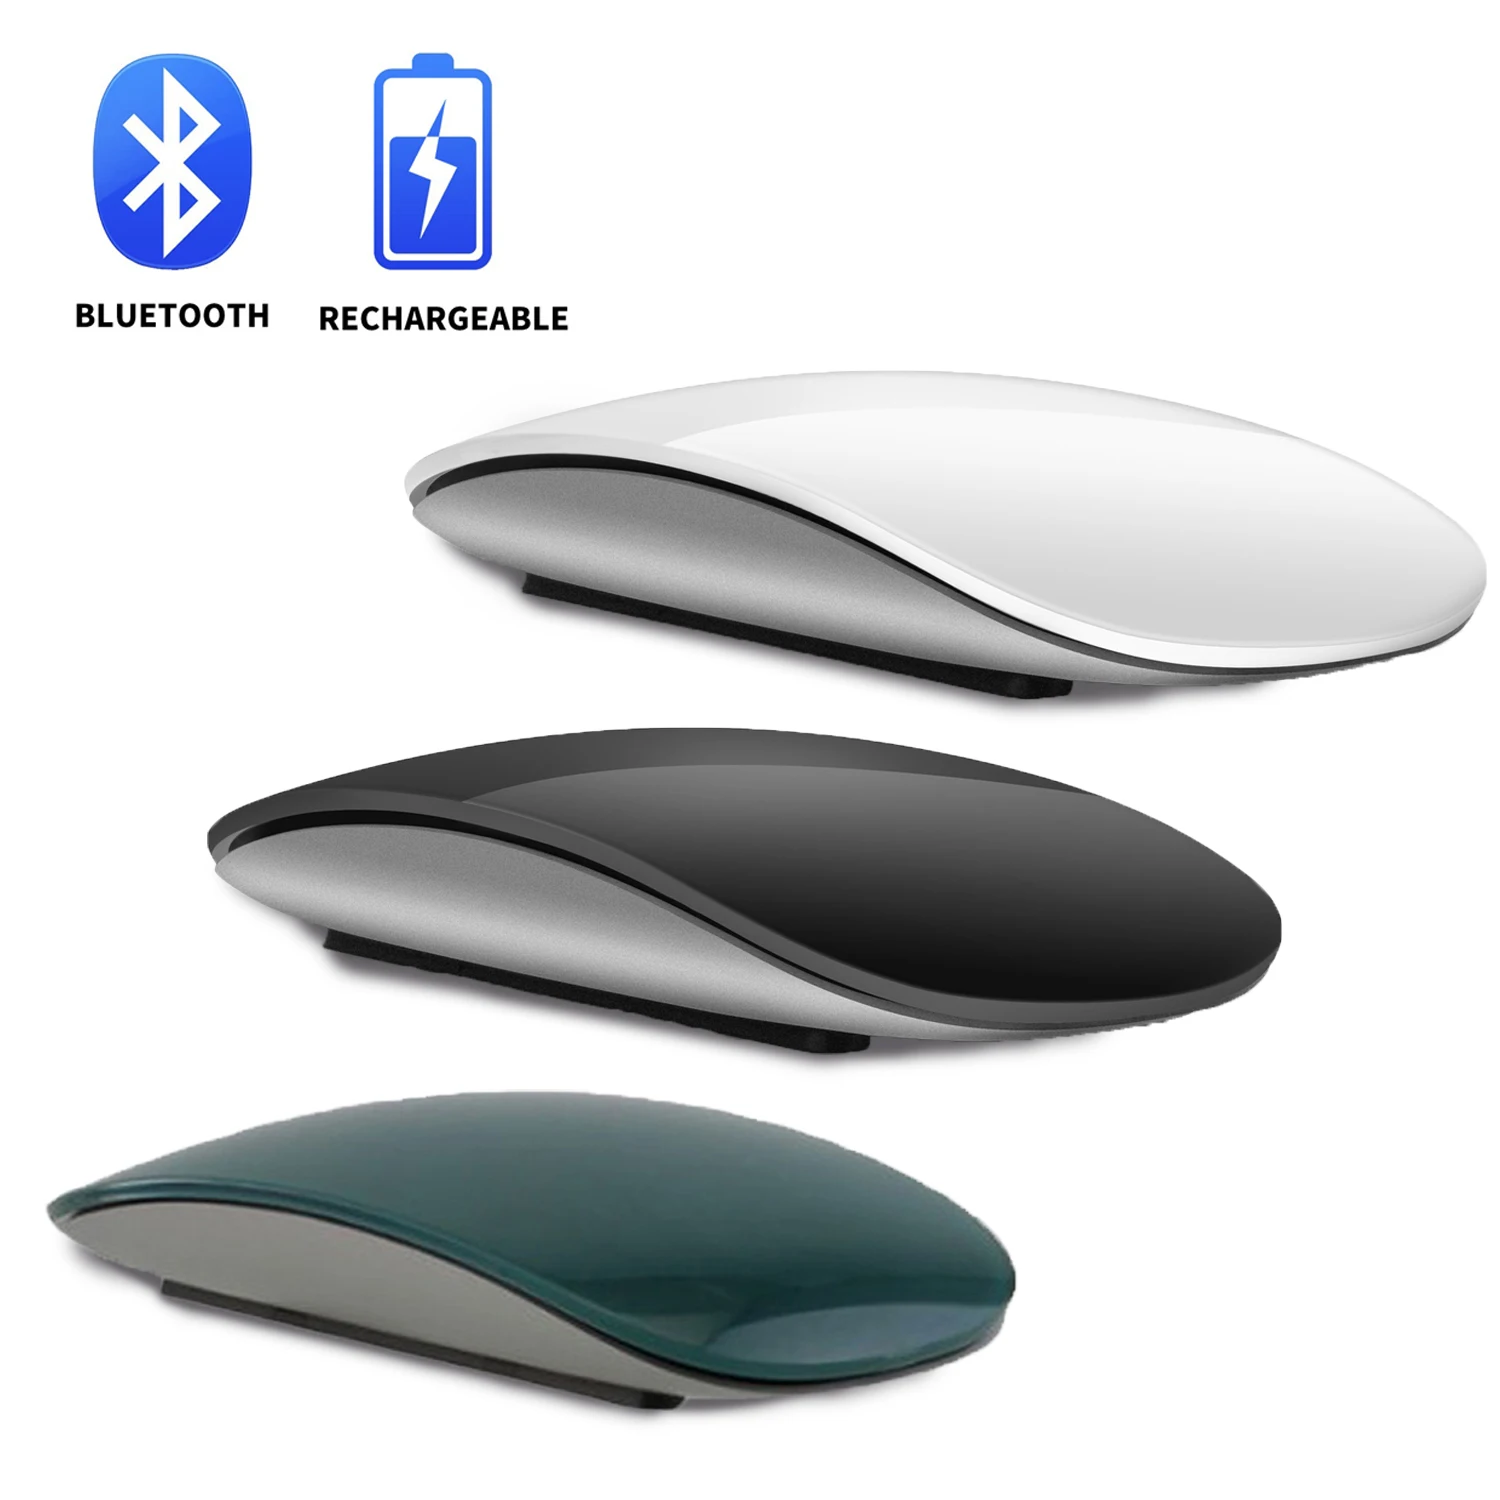 

Bluetooth беспроводная Волшебная перезаряжаемая ультратонкая Лазерная Бесшумная сенсорная мышь эргономичные портативные мыши для Apple Macbook Mac PC